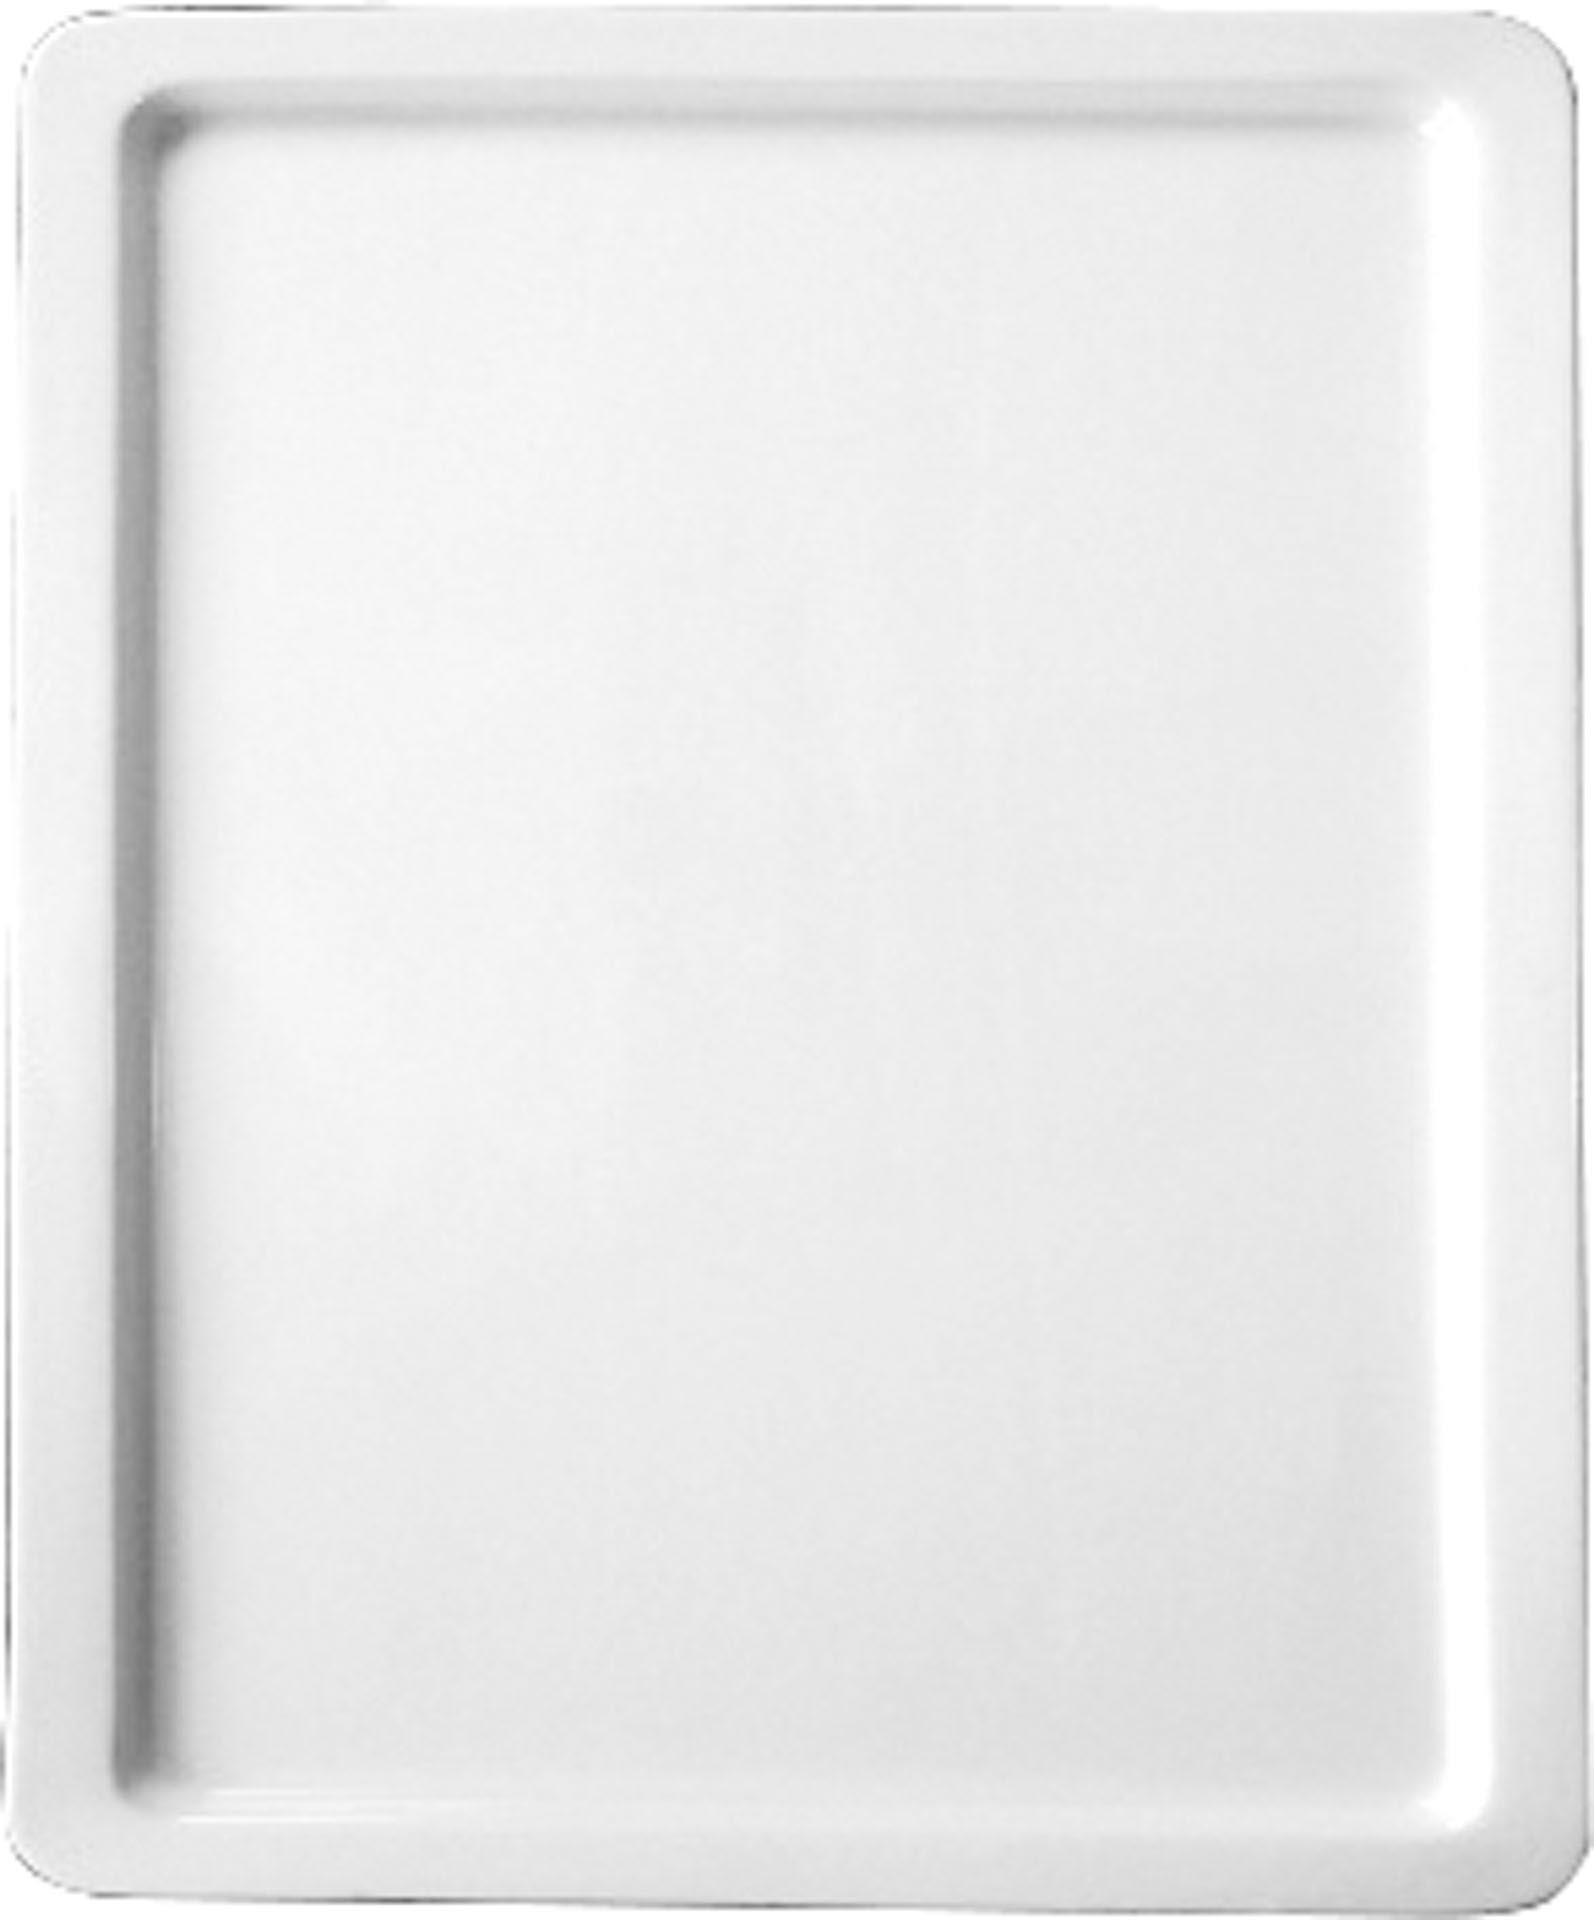 GN-Platte 2/3 - 20 mm, weiß, Porzellan